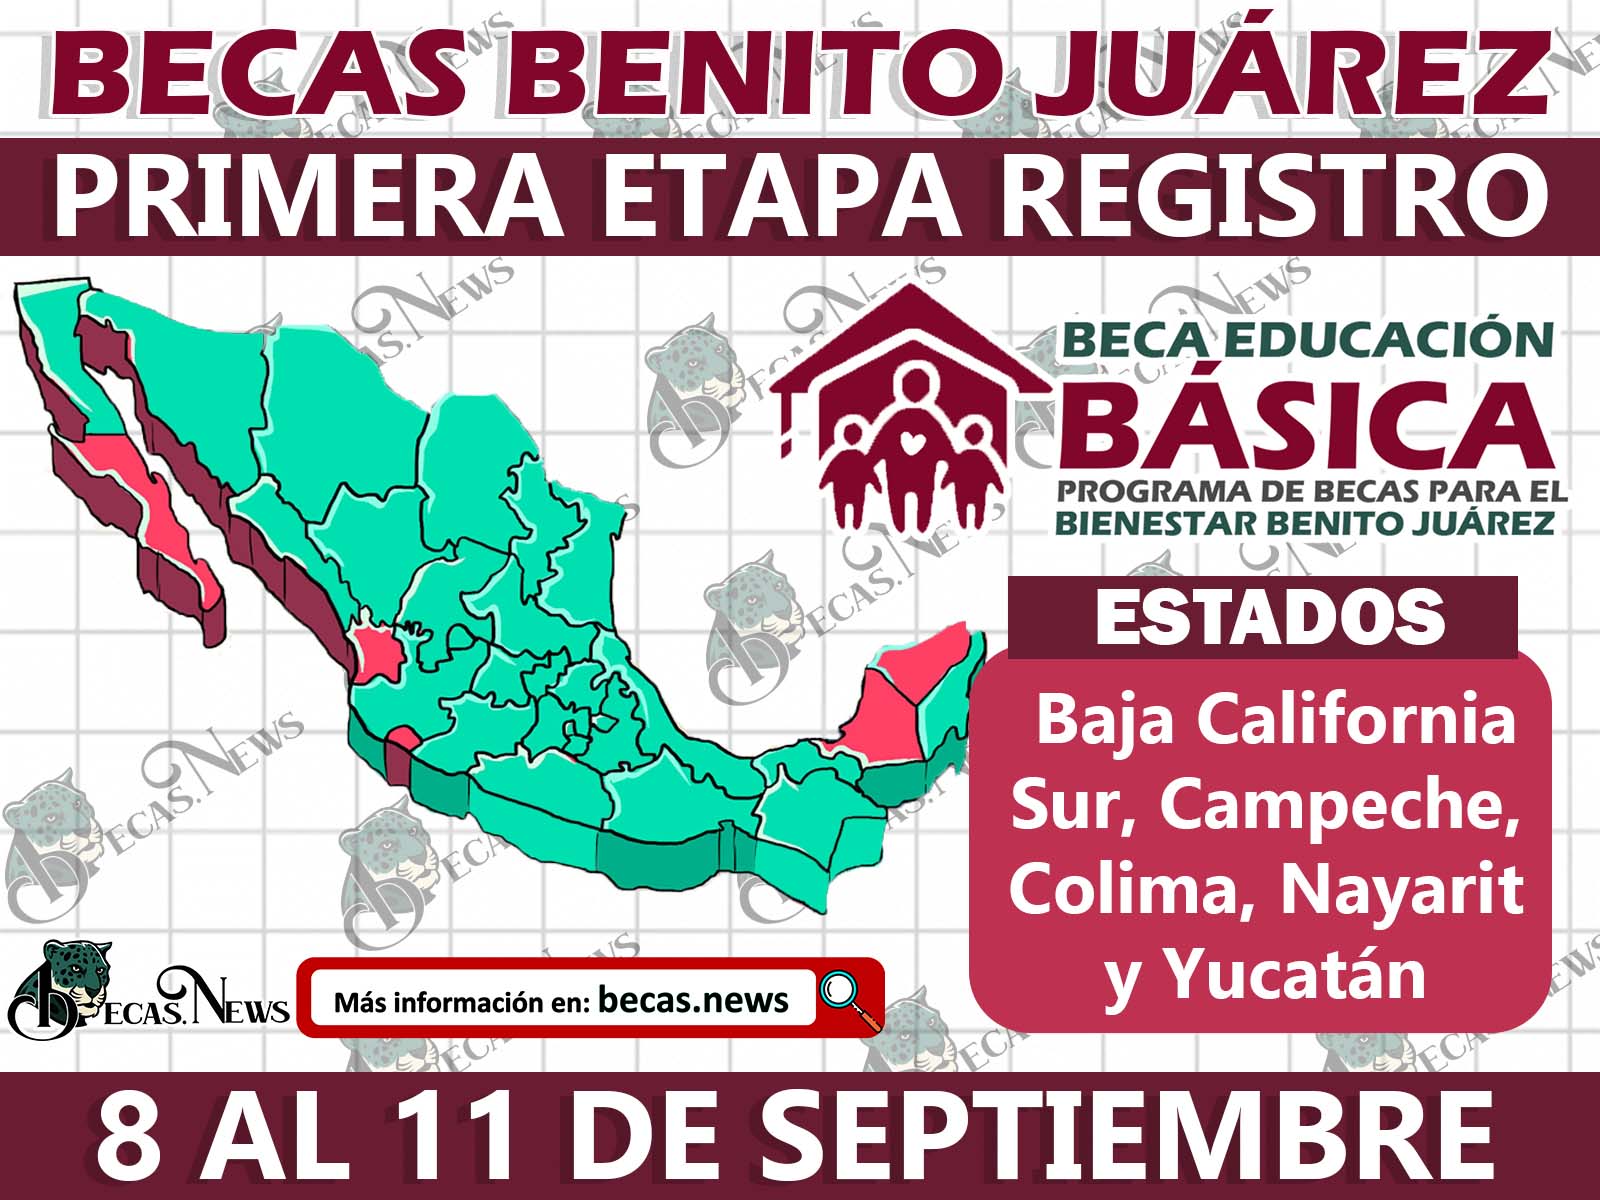 Excelentes noticias ¡Ya puedes solicitar la Beca Benito Juárez! Mira qué estados les corresponde del 8 al 11 de septiembre